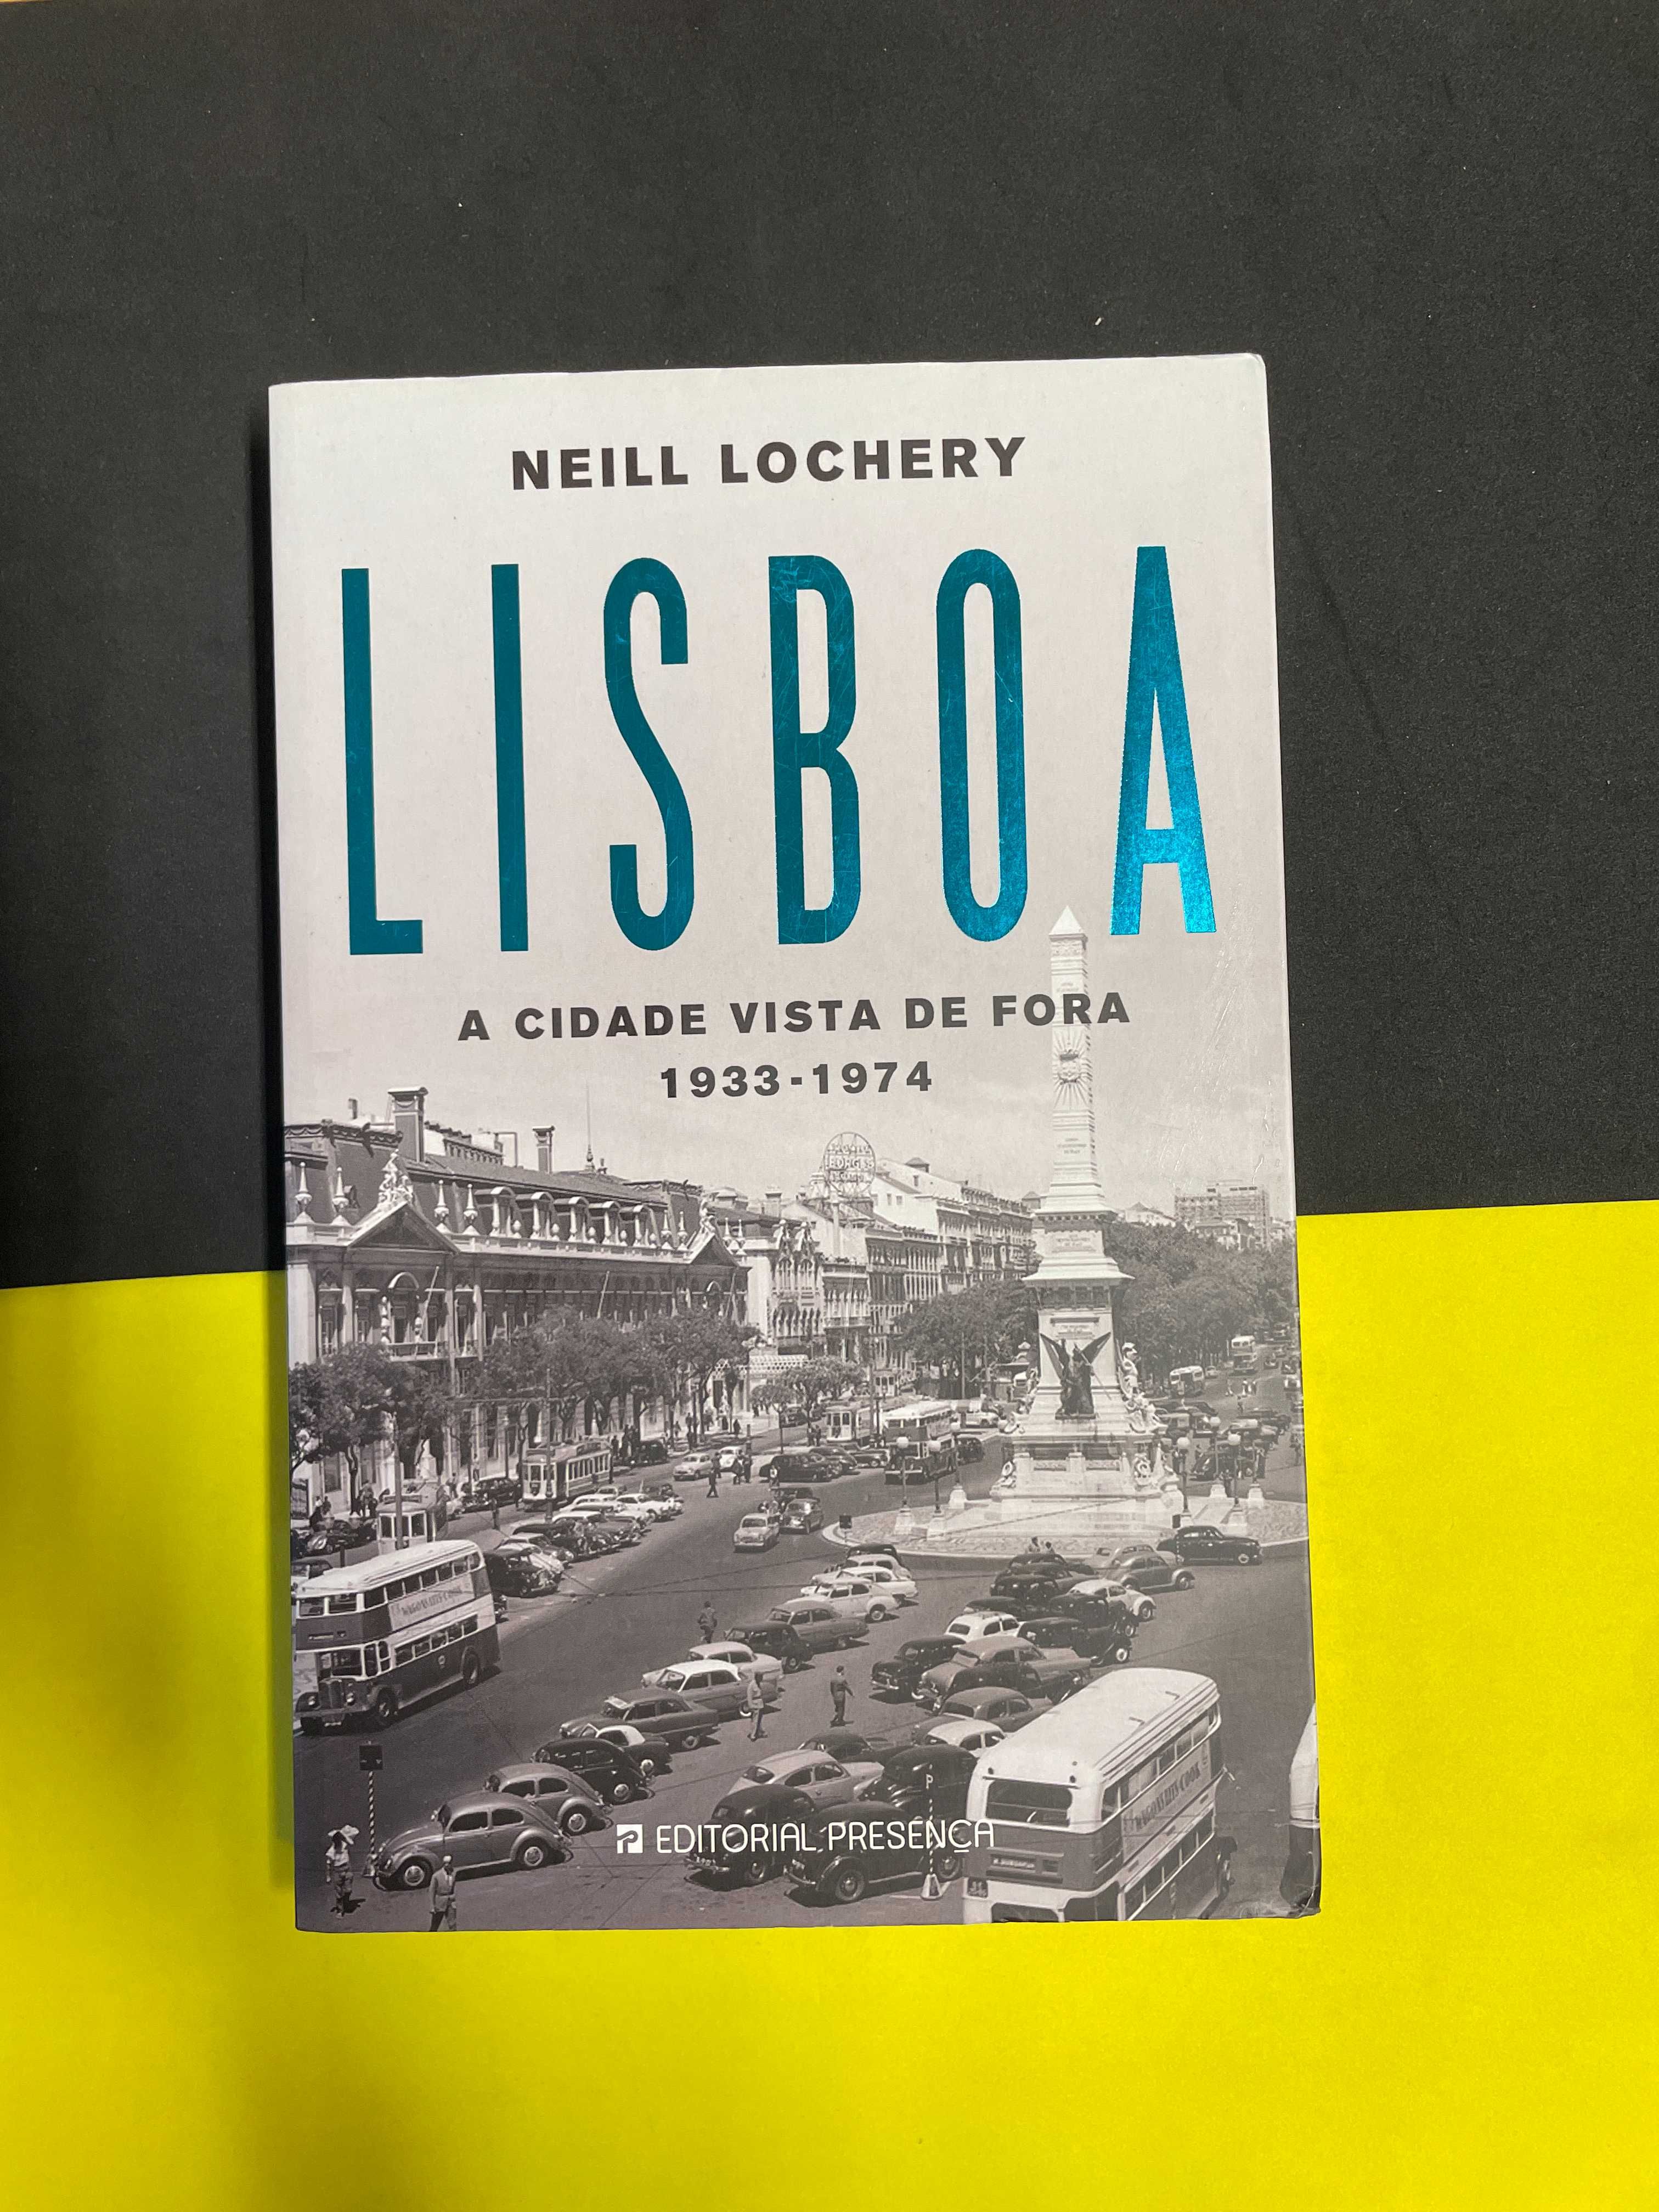 Neil Lochery - Lisboa: A Cidade Vista de Fora 1933/1974